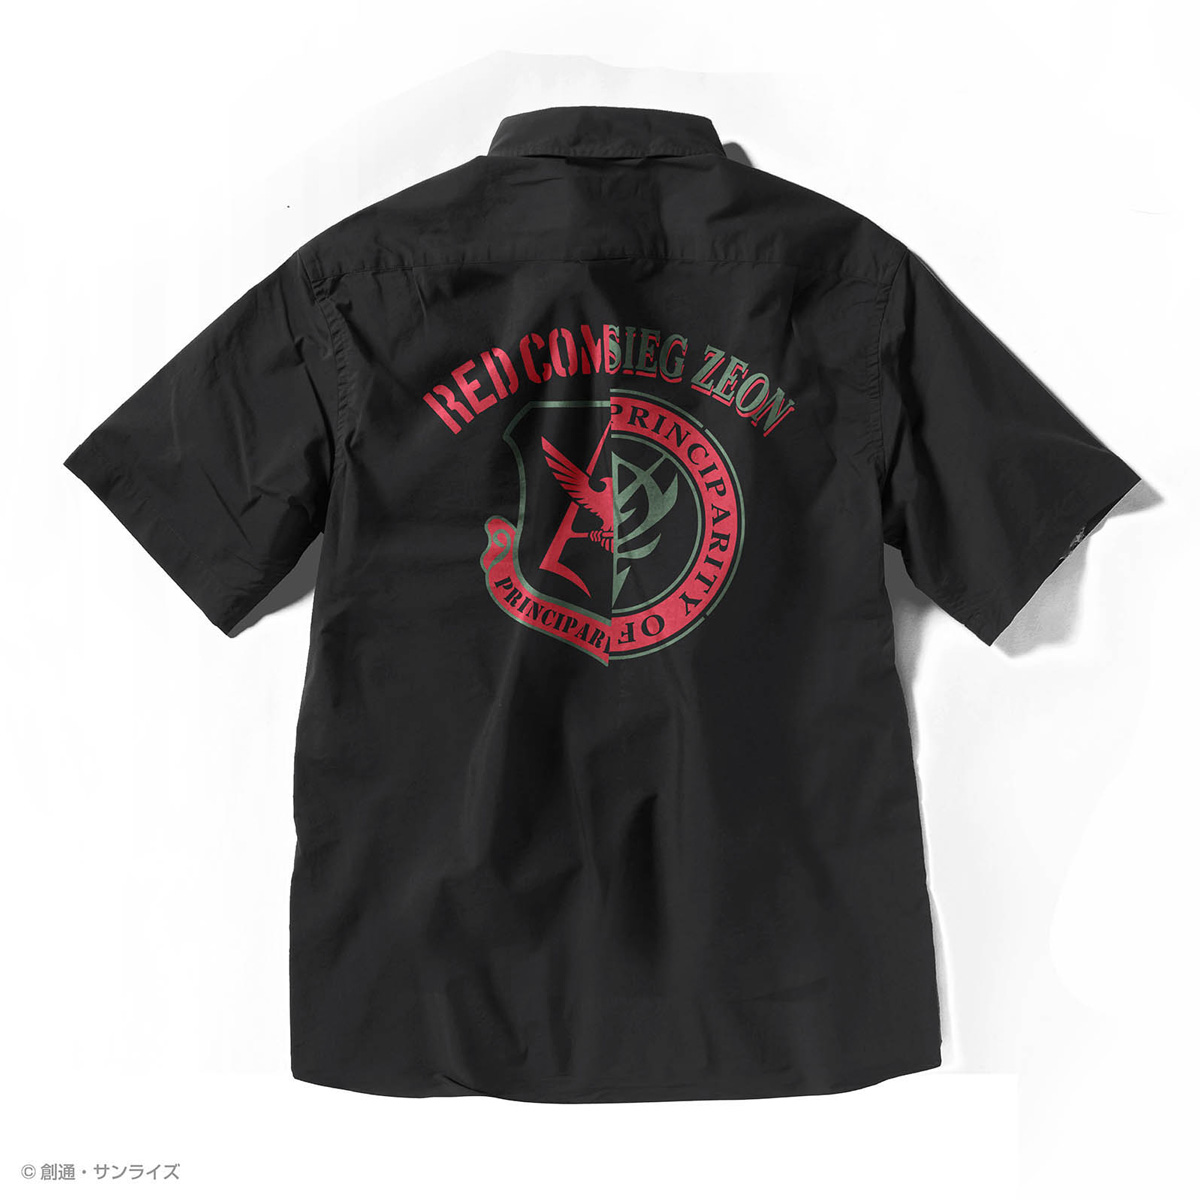 『機動戦士ガンダム』シャツコレクション発売！サラリとした快適な着心地、クールマックスシャツ、全6種！